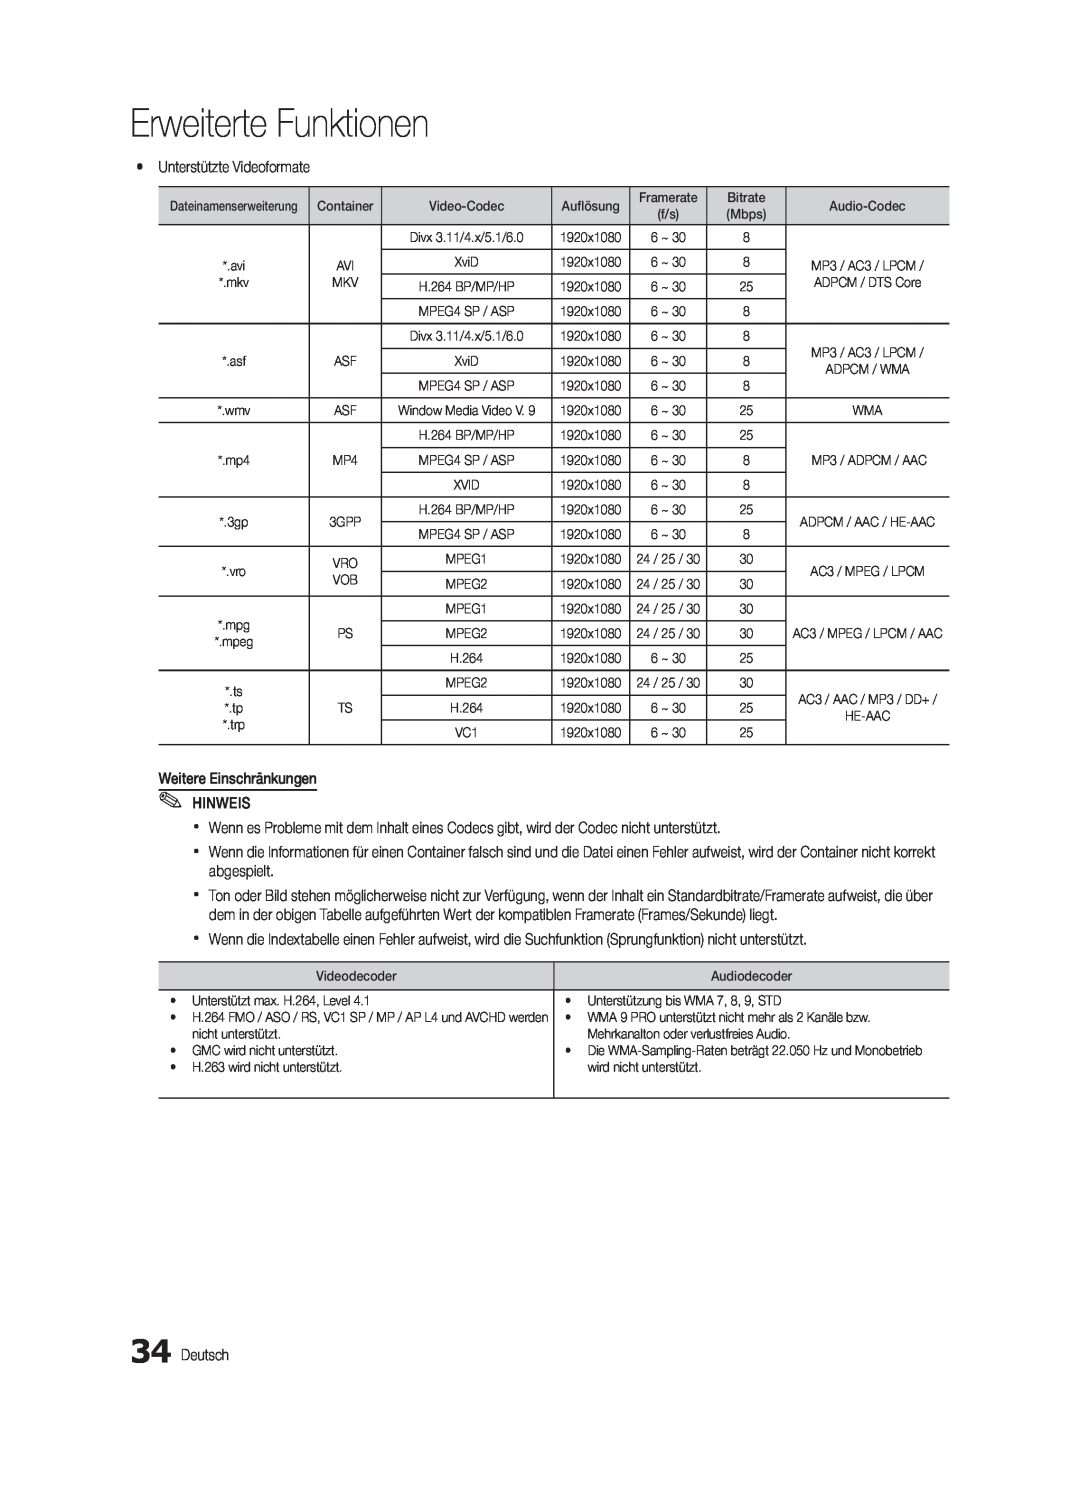 Samsung UE32C5700QSXZG manual Erweiterte Funktionen, yy Unterstützte Videoformate, Weitere Einschränkungen HINWEIS, Deutsch 